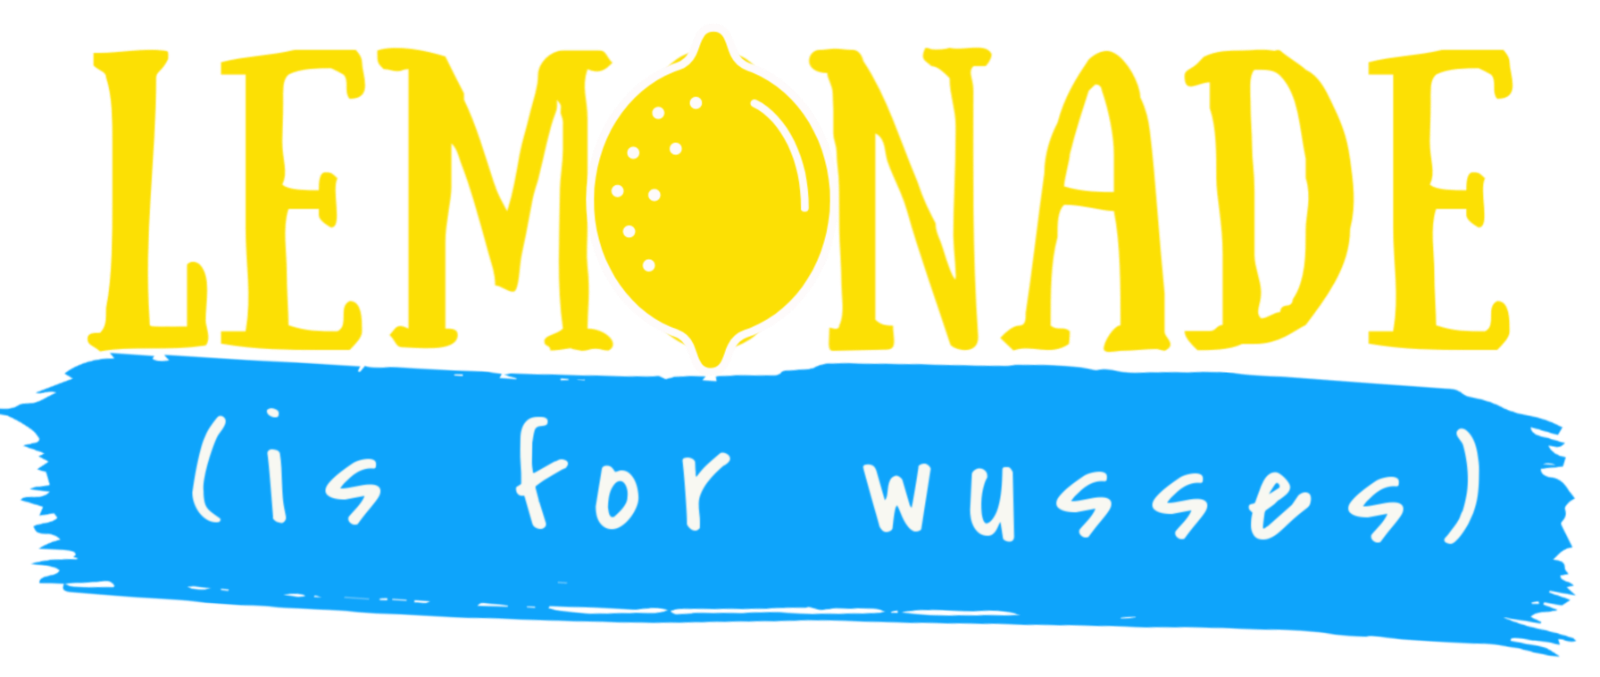 Lemonade Is For Wusses